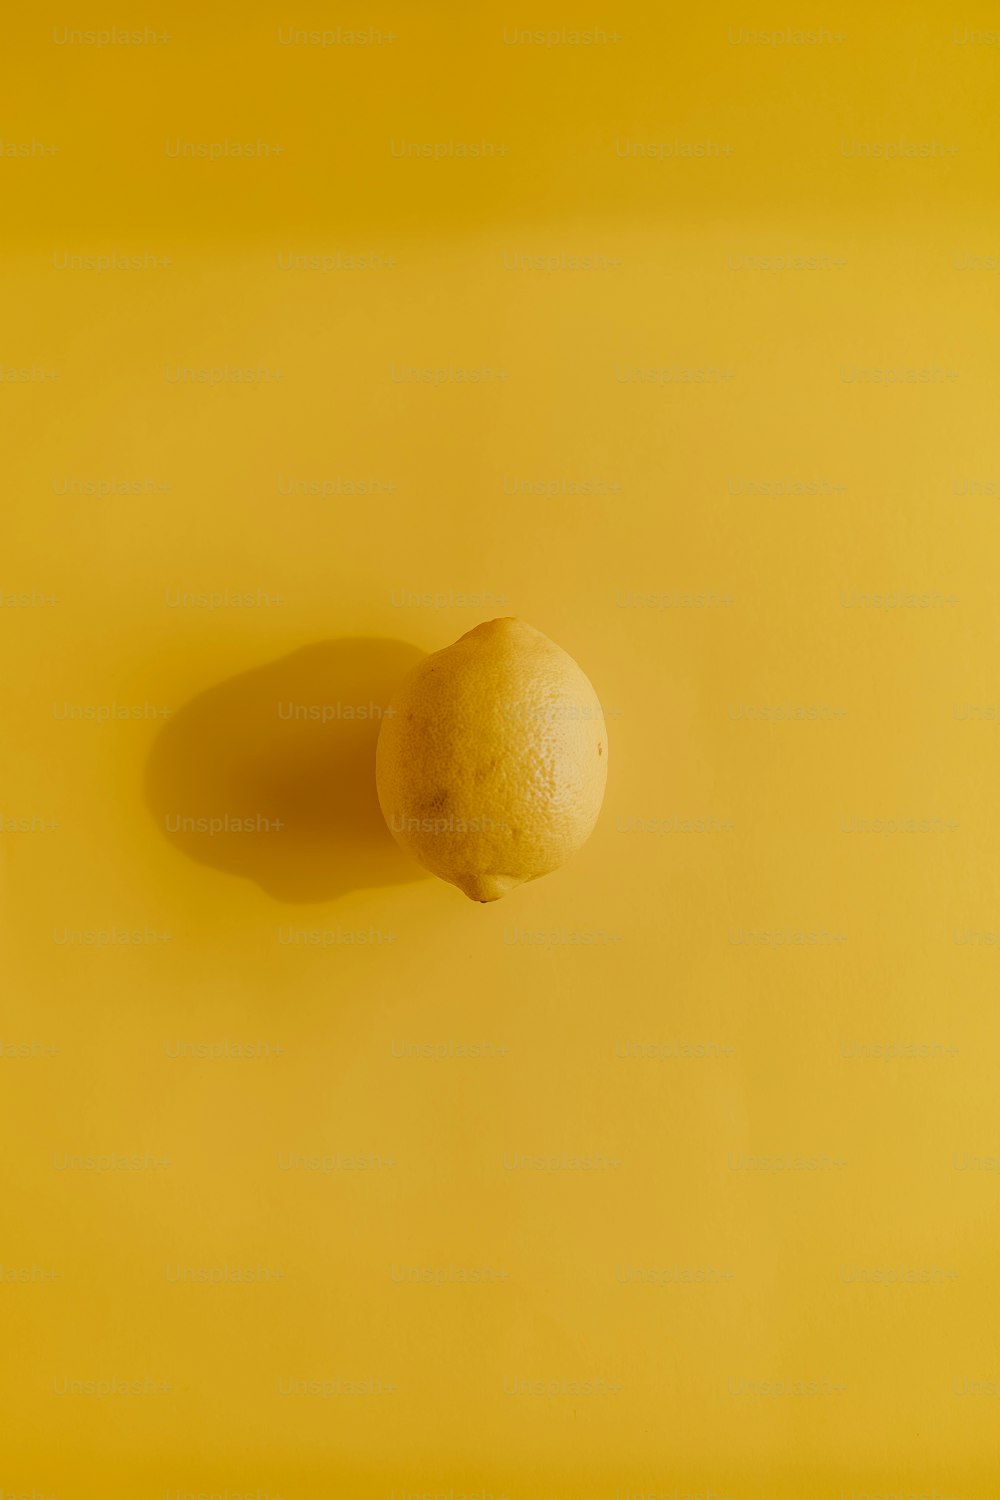 un limón sentado encima de una superficie amarilla